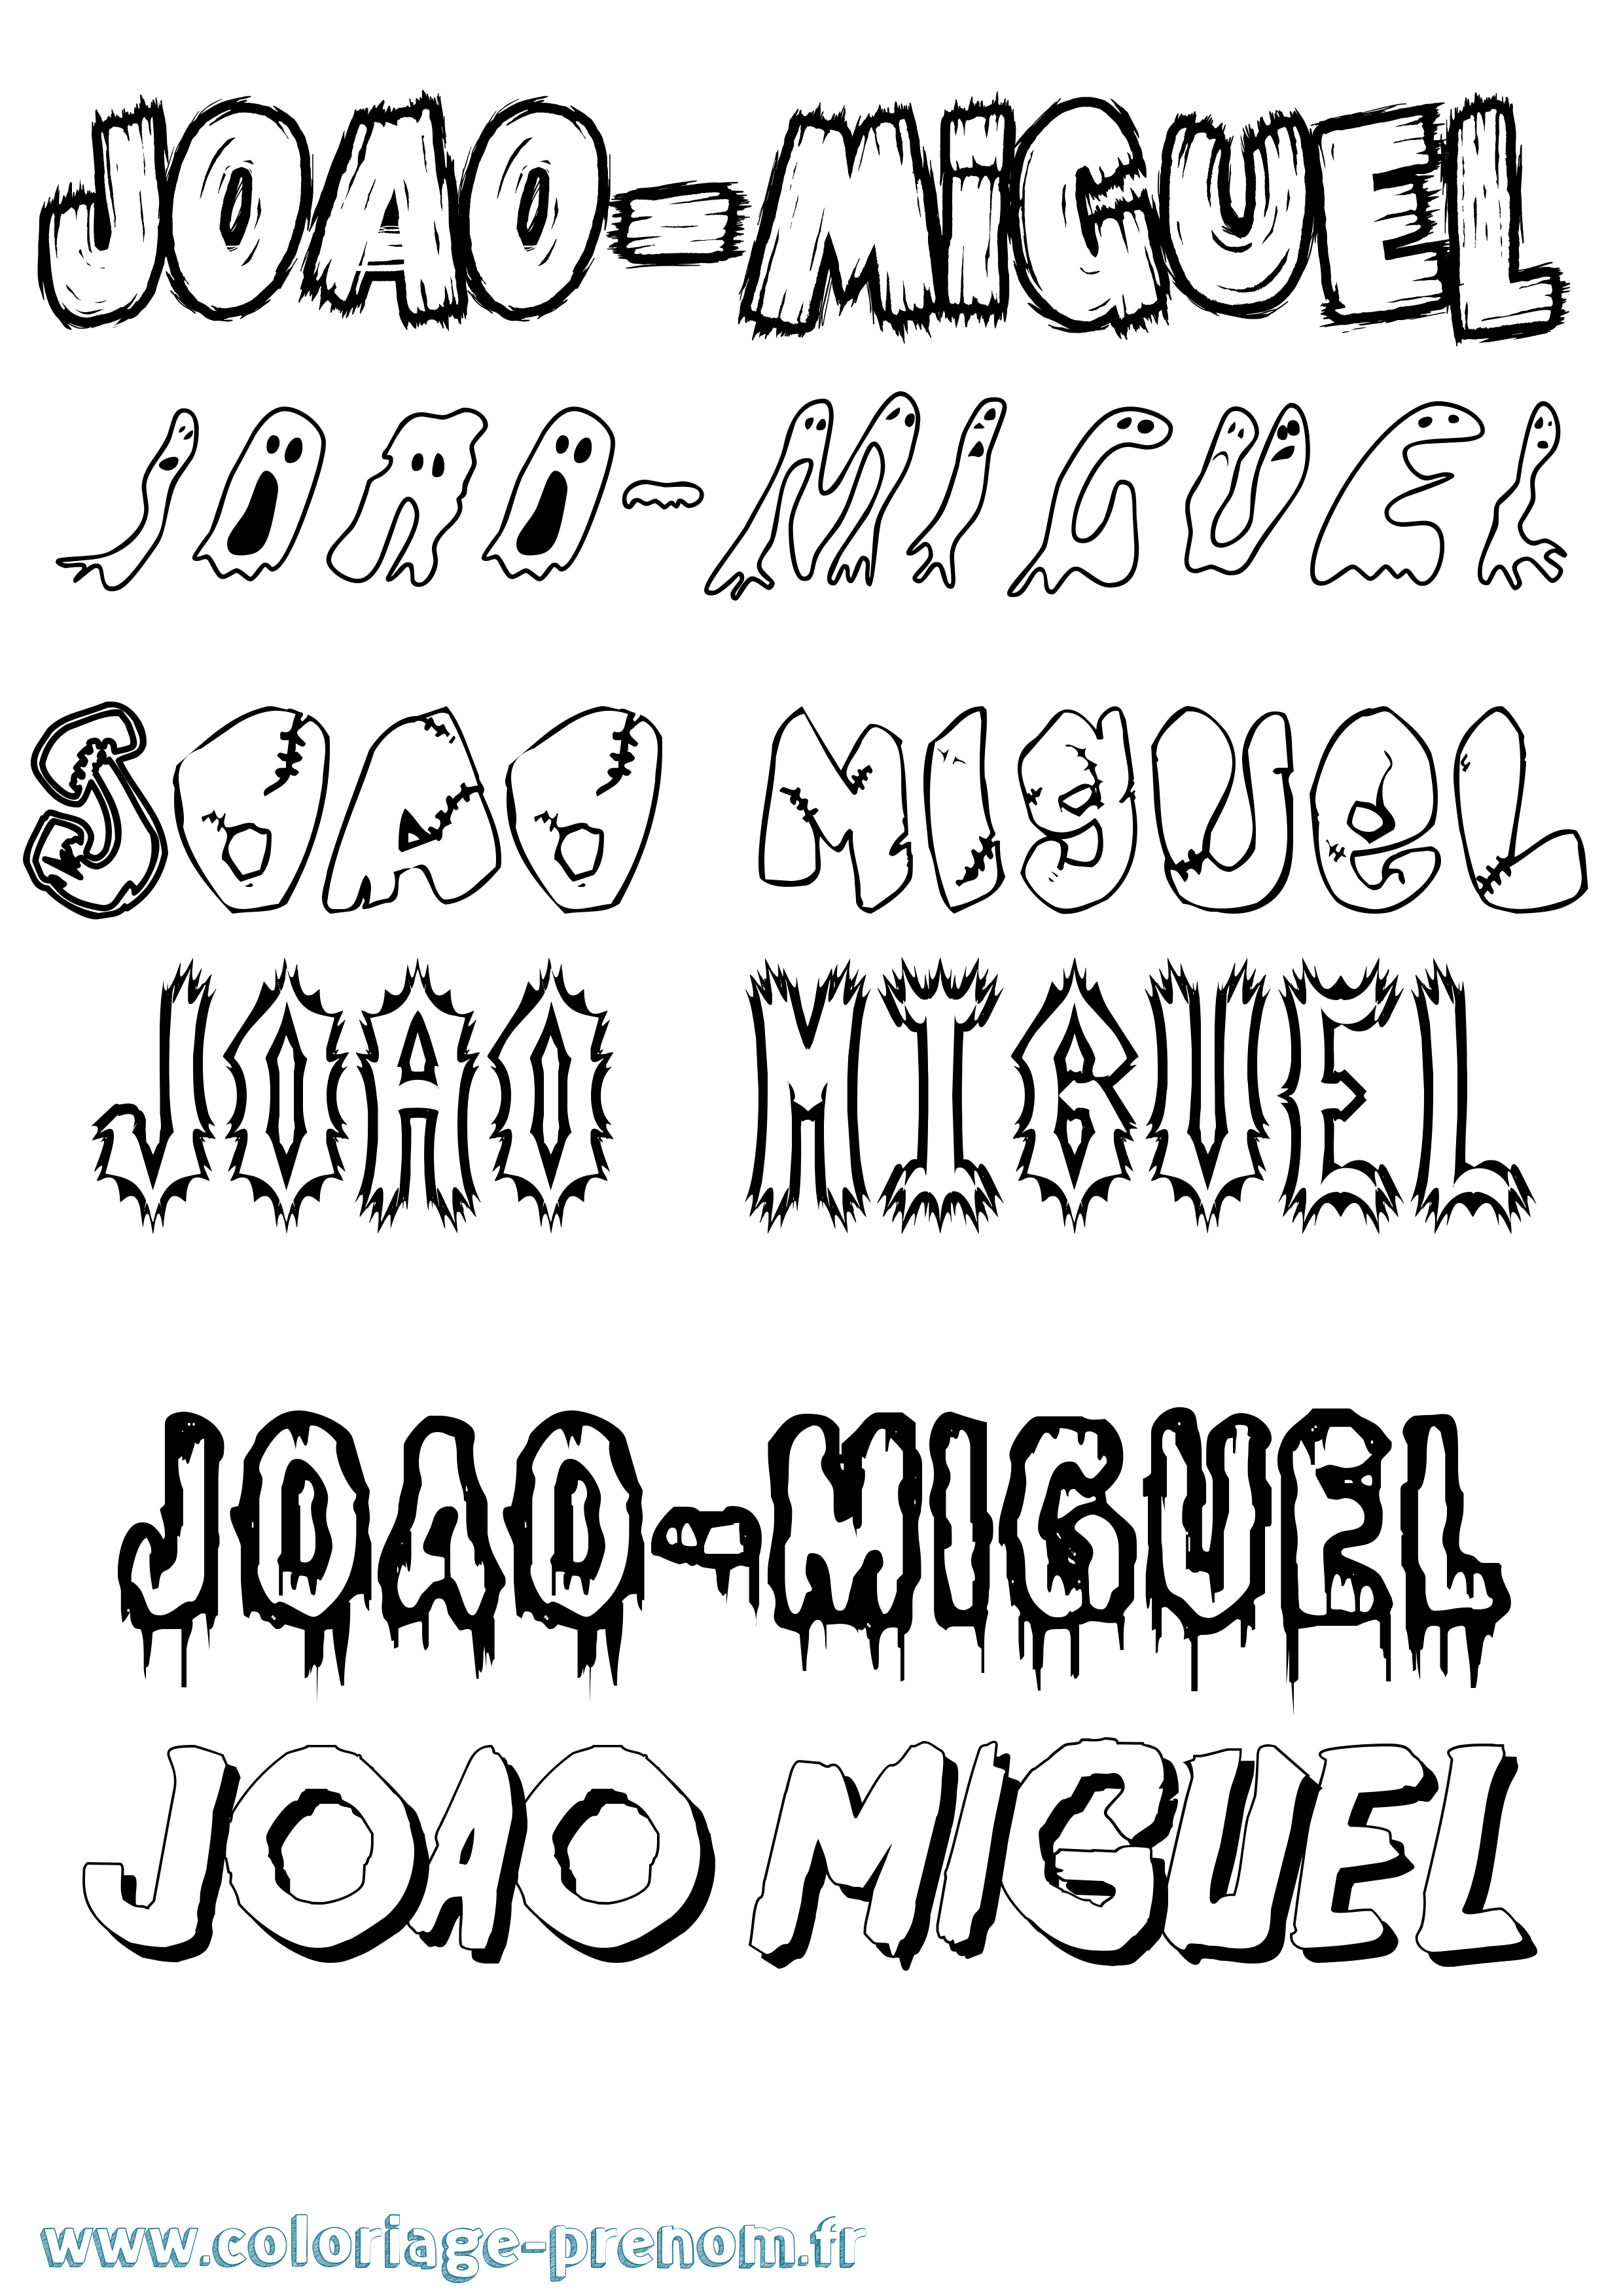 Coloriage prénom Joao-Miguel Frisson